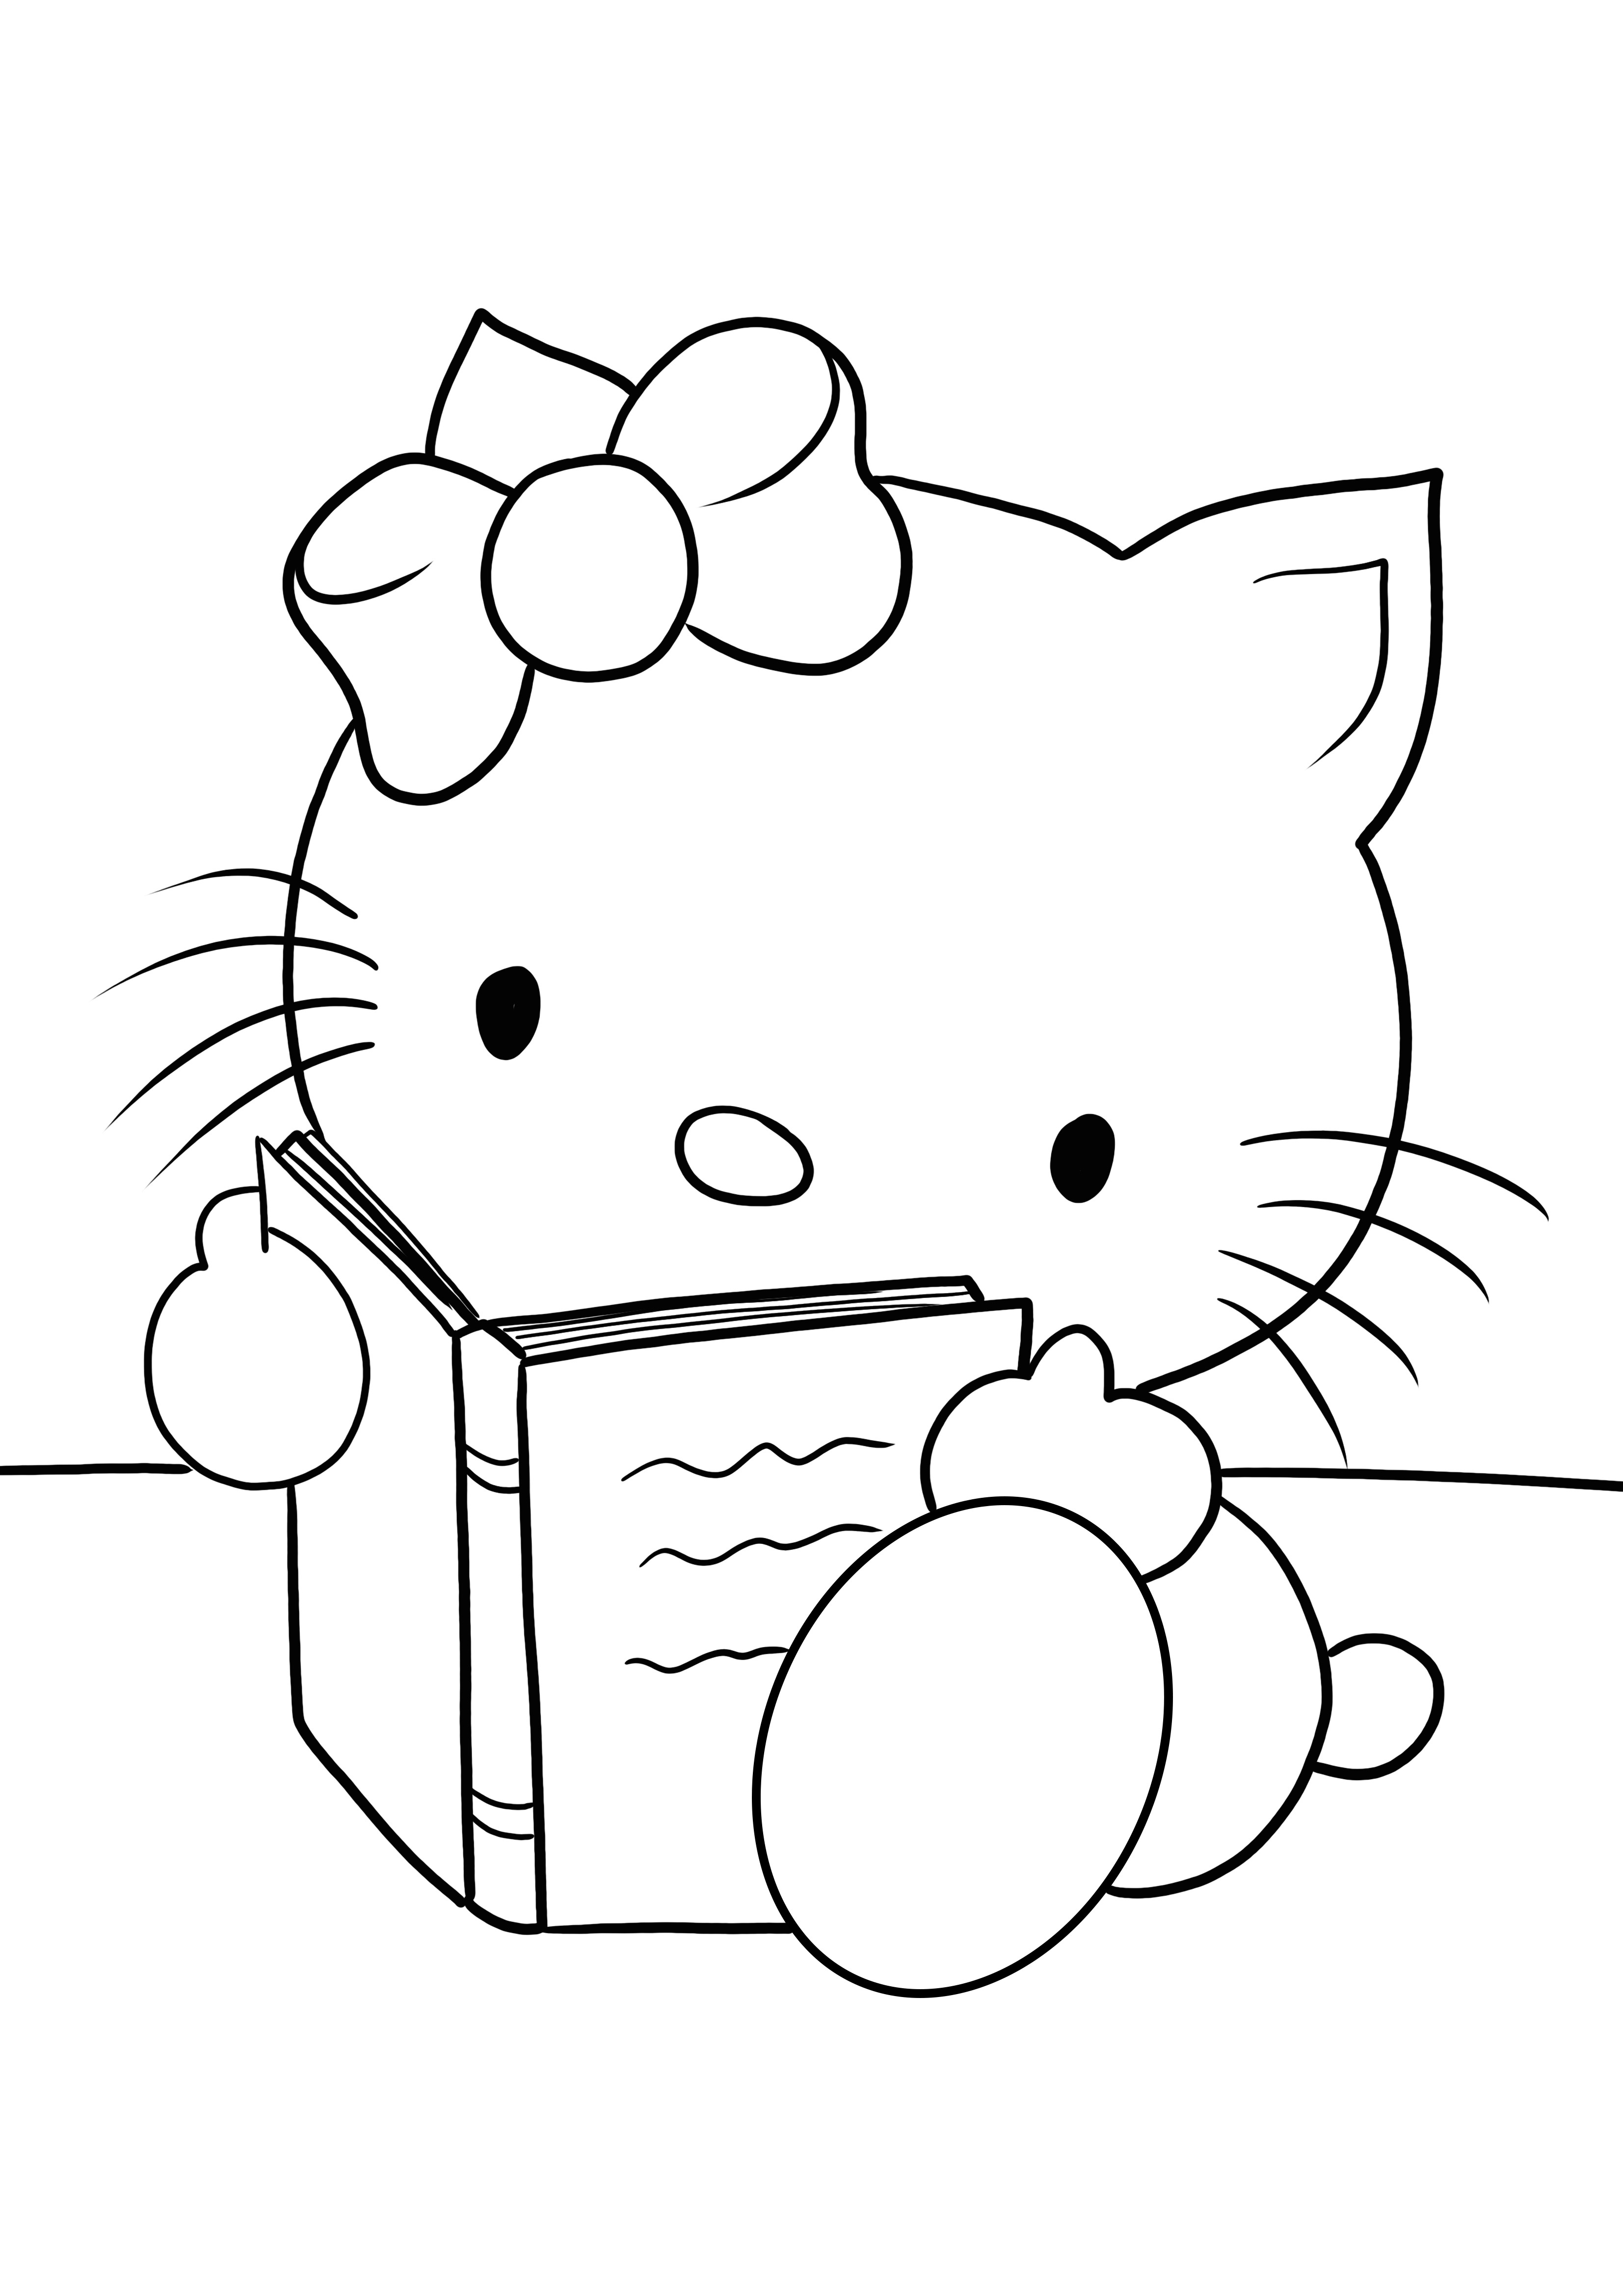 Hello Kitty está lendo uma página de coloração de livro para uso gratuito por crianças